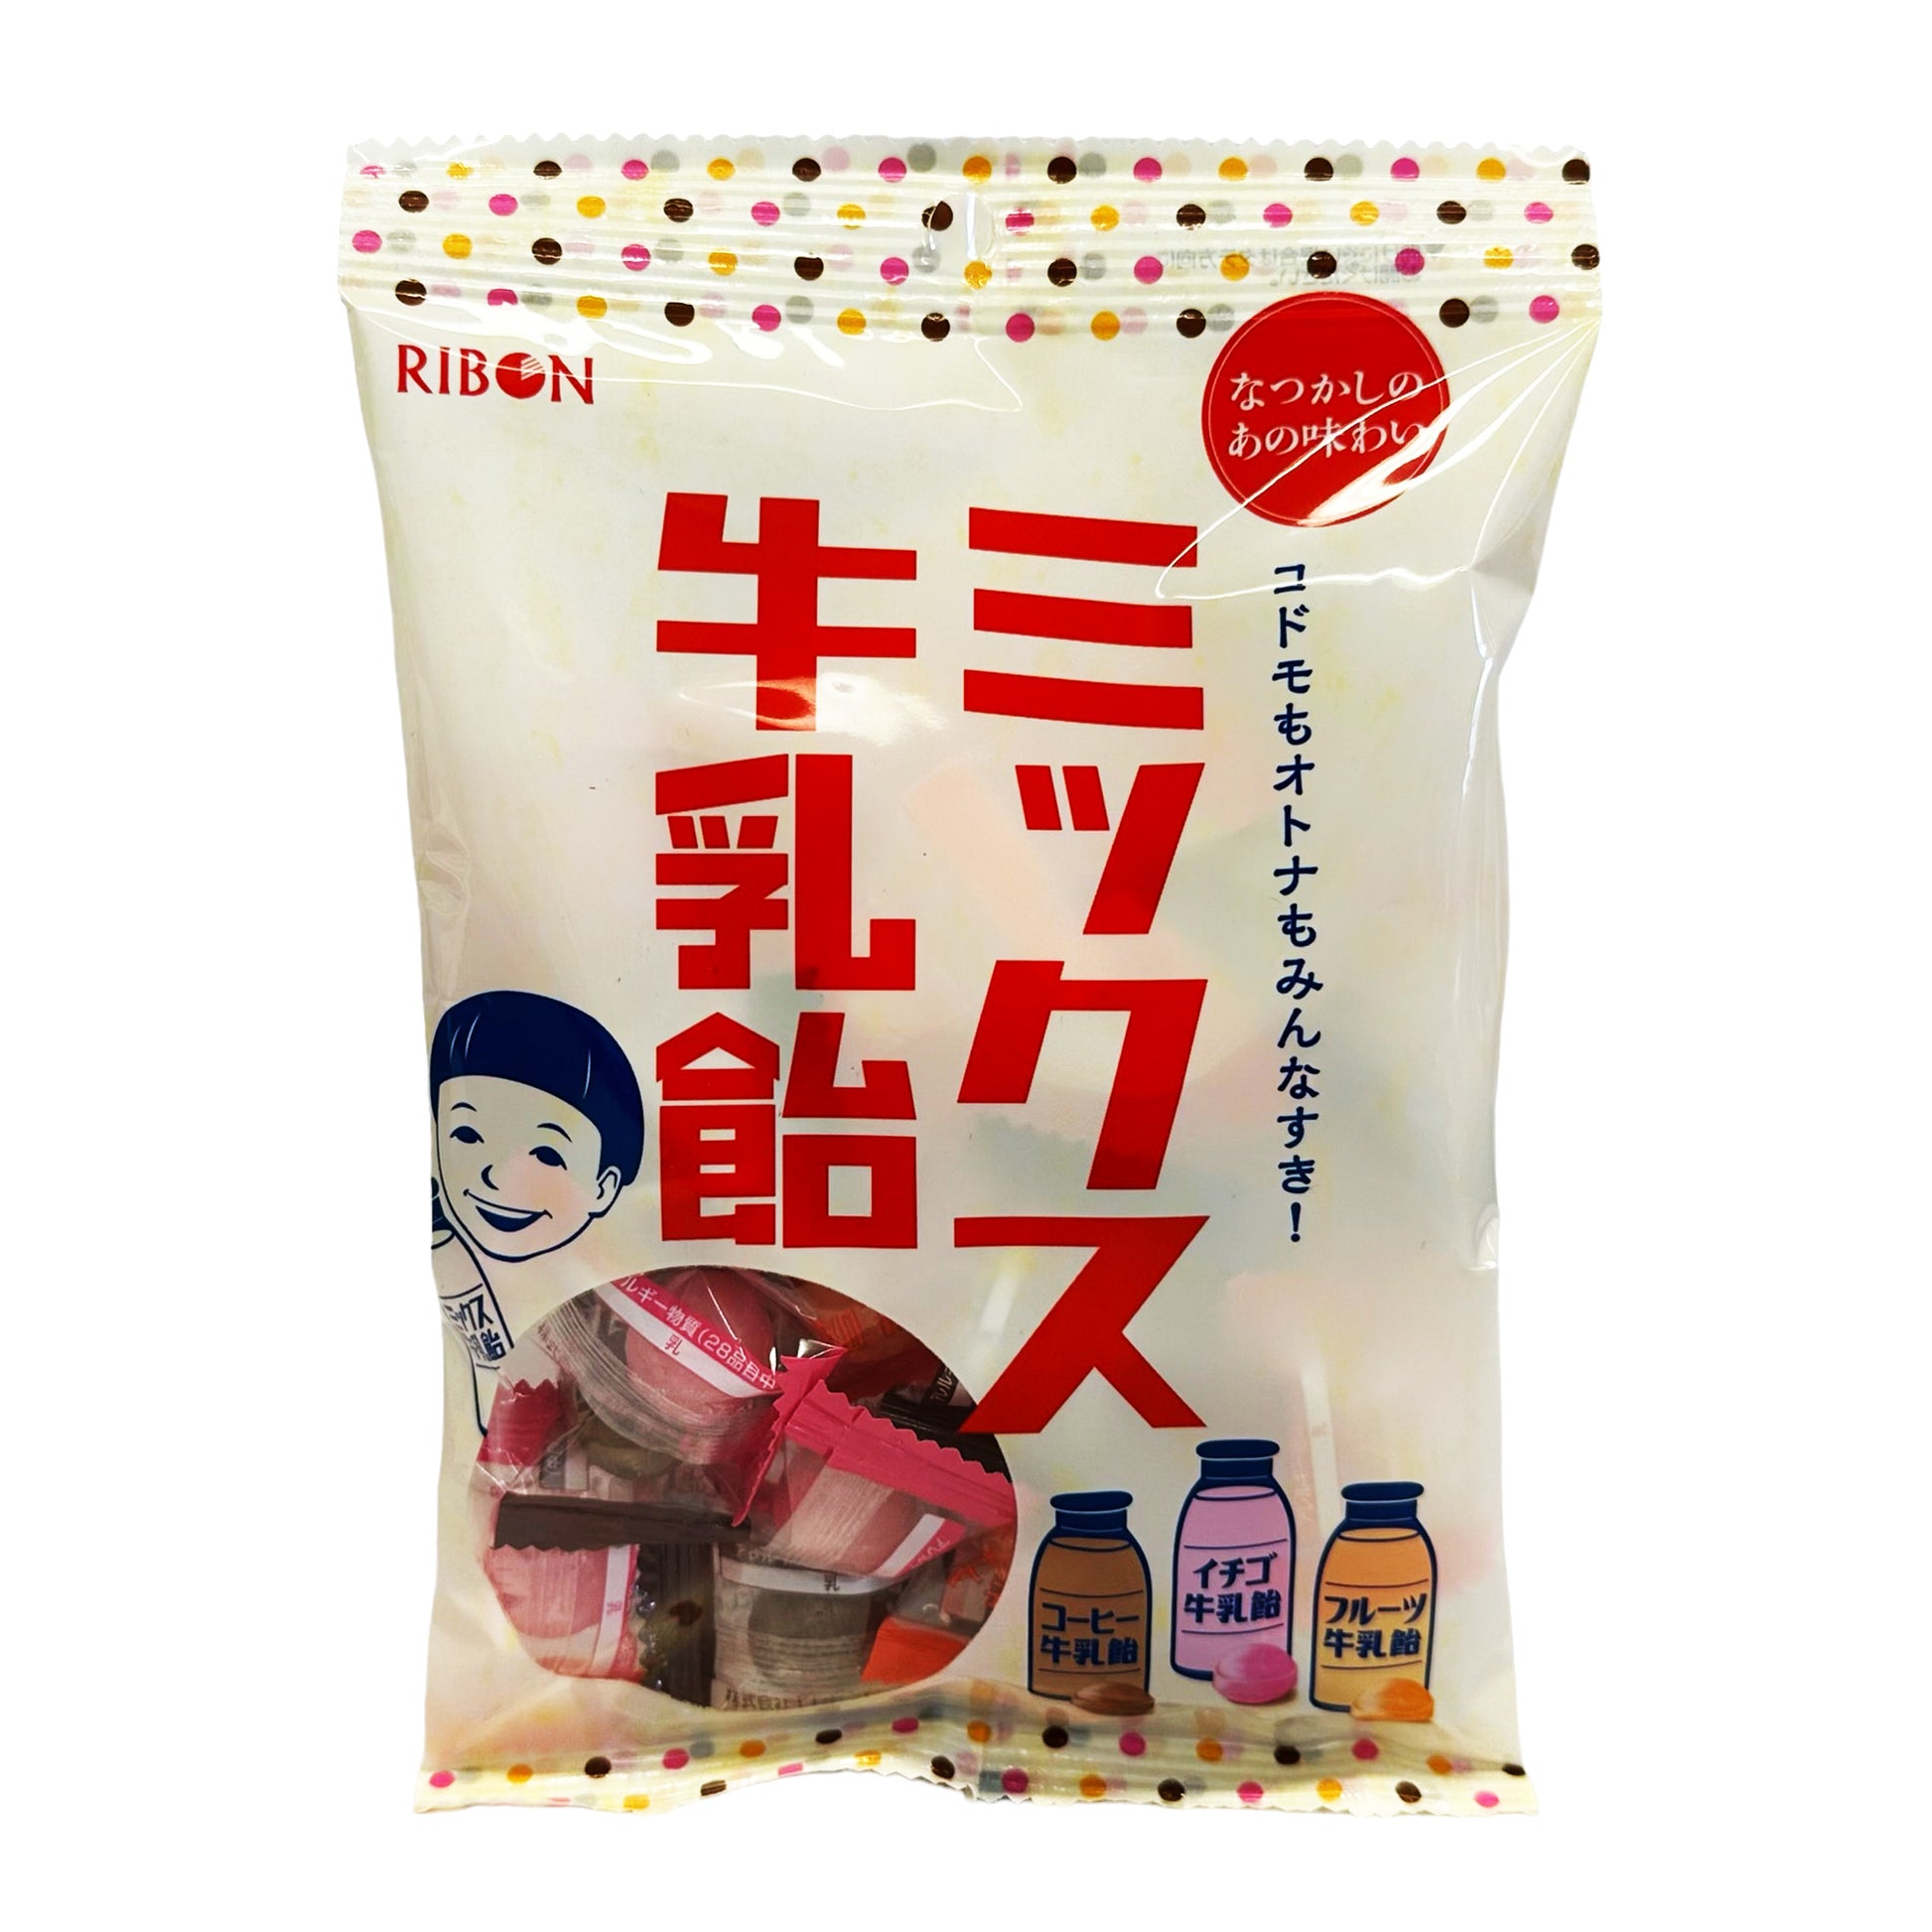 Ribon Mixed Milk Candy 3.5oz (100g) - Just Asian Food